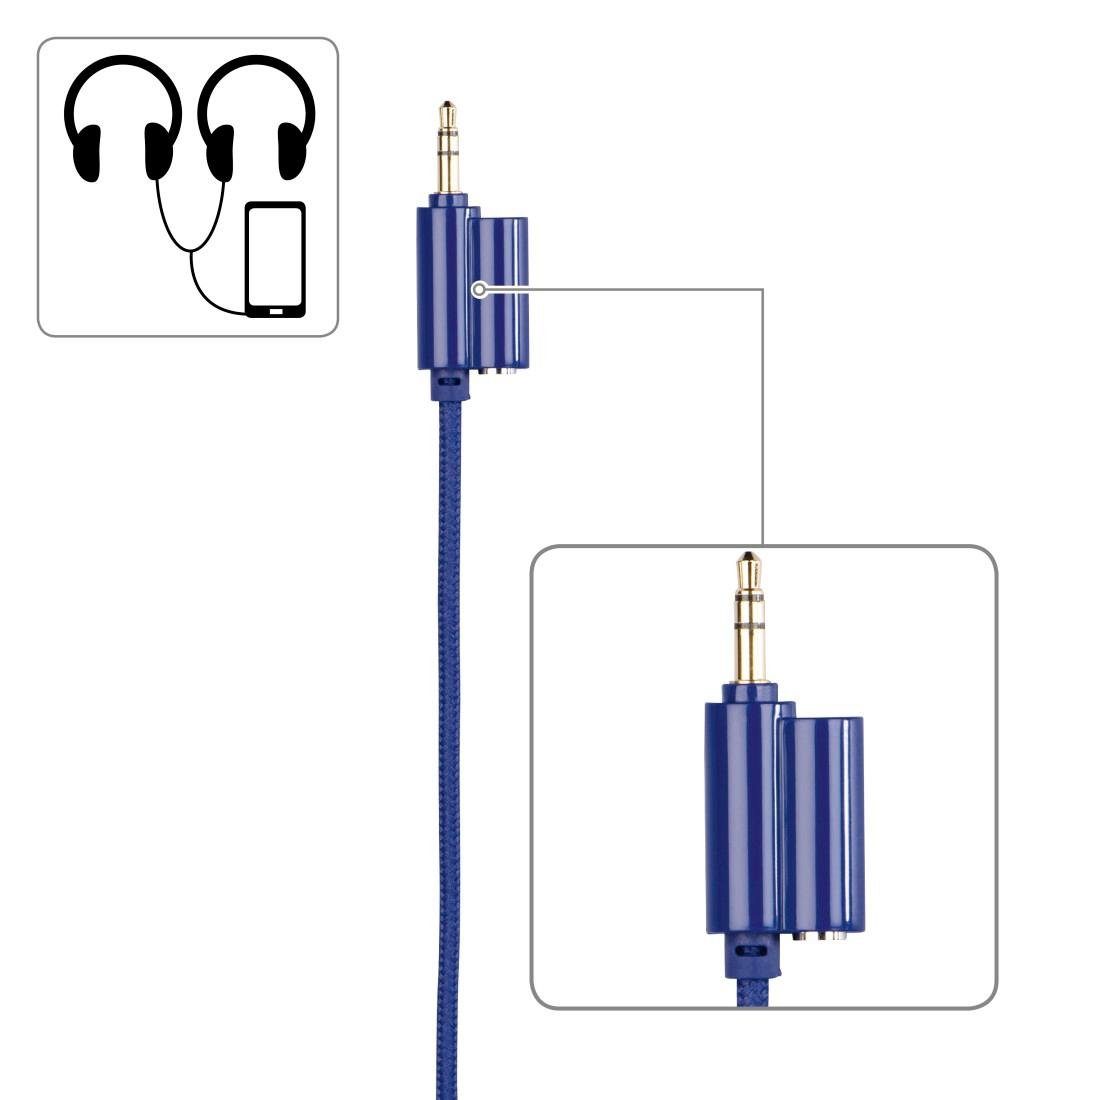 zusammenfaltbar, (größenverstellbar Thomson On-Ear, 85dB leicht möglich) Kinderkopfhörer Kopfhöreranschluss On-Ear-Kopfhörer mit Lautstärkebegrenzung auf blau Kabel weiterer